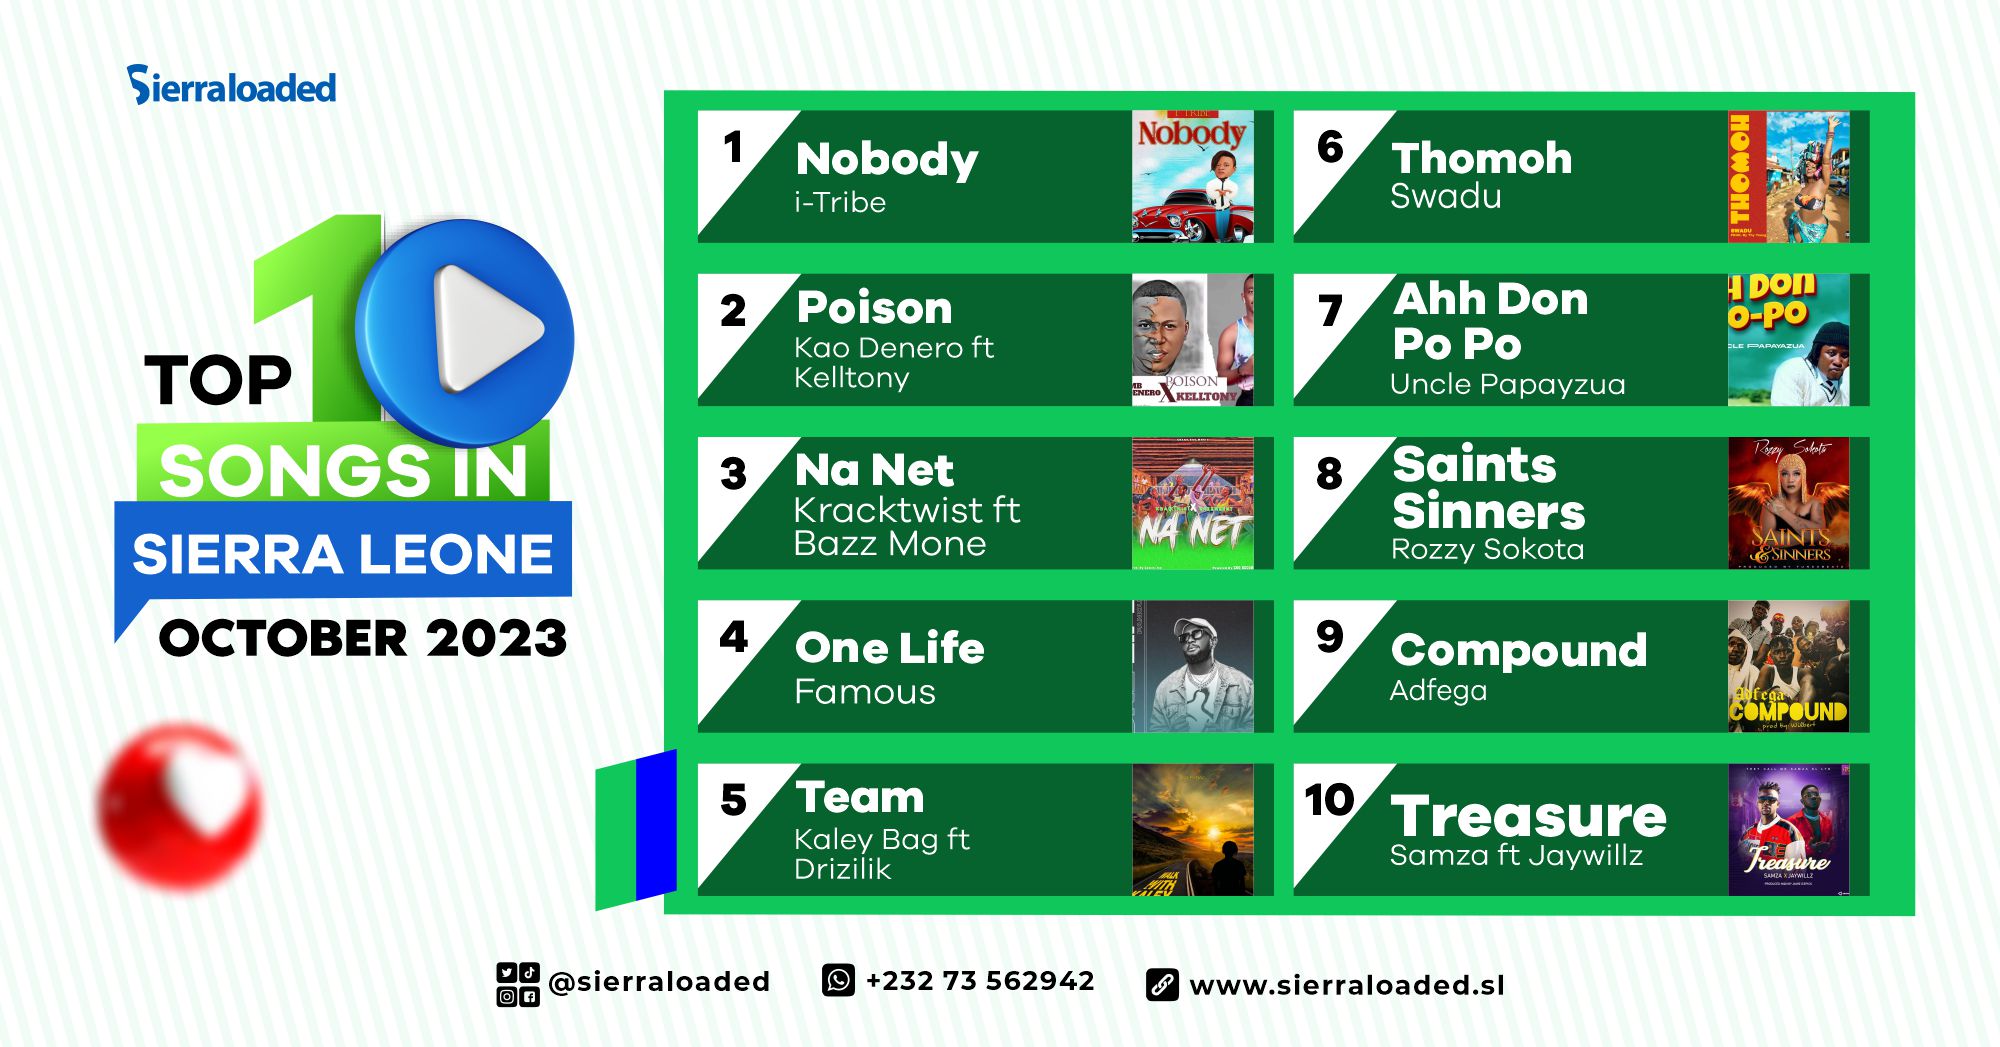 Top 10 Songs in Sierra Leone For October 2023